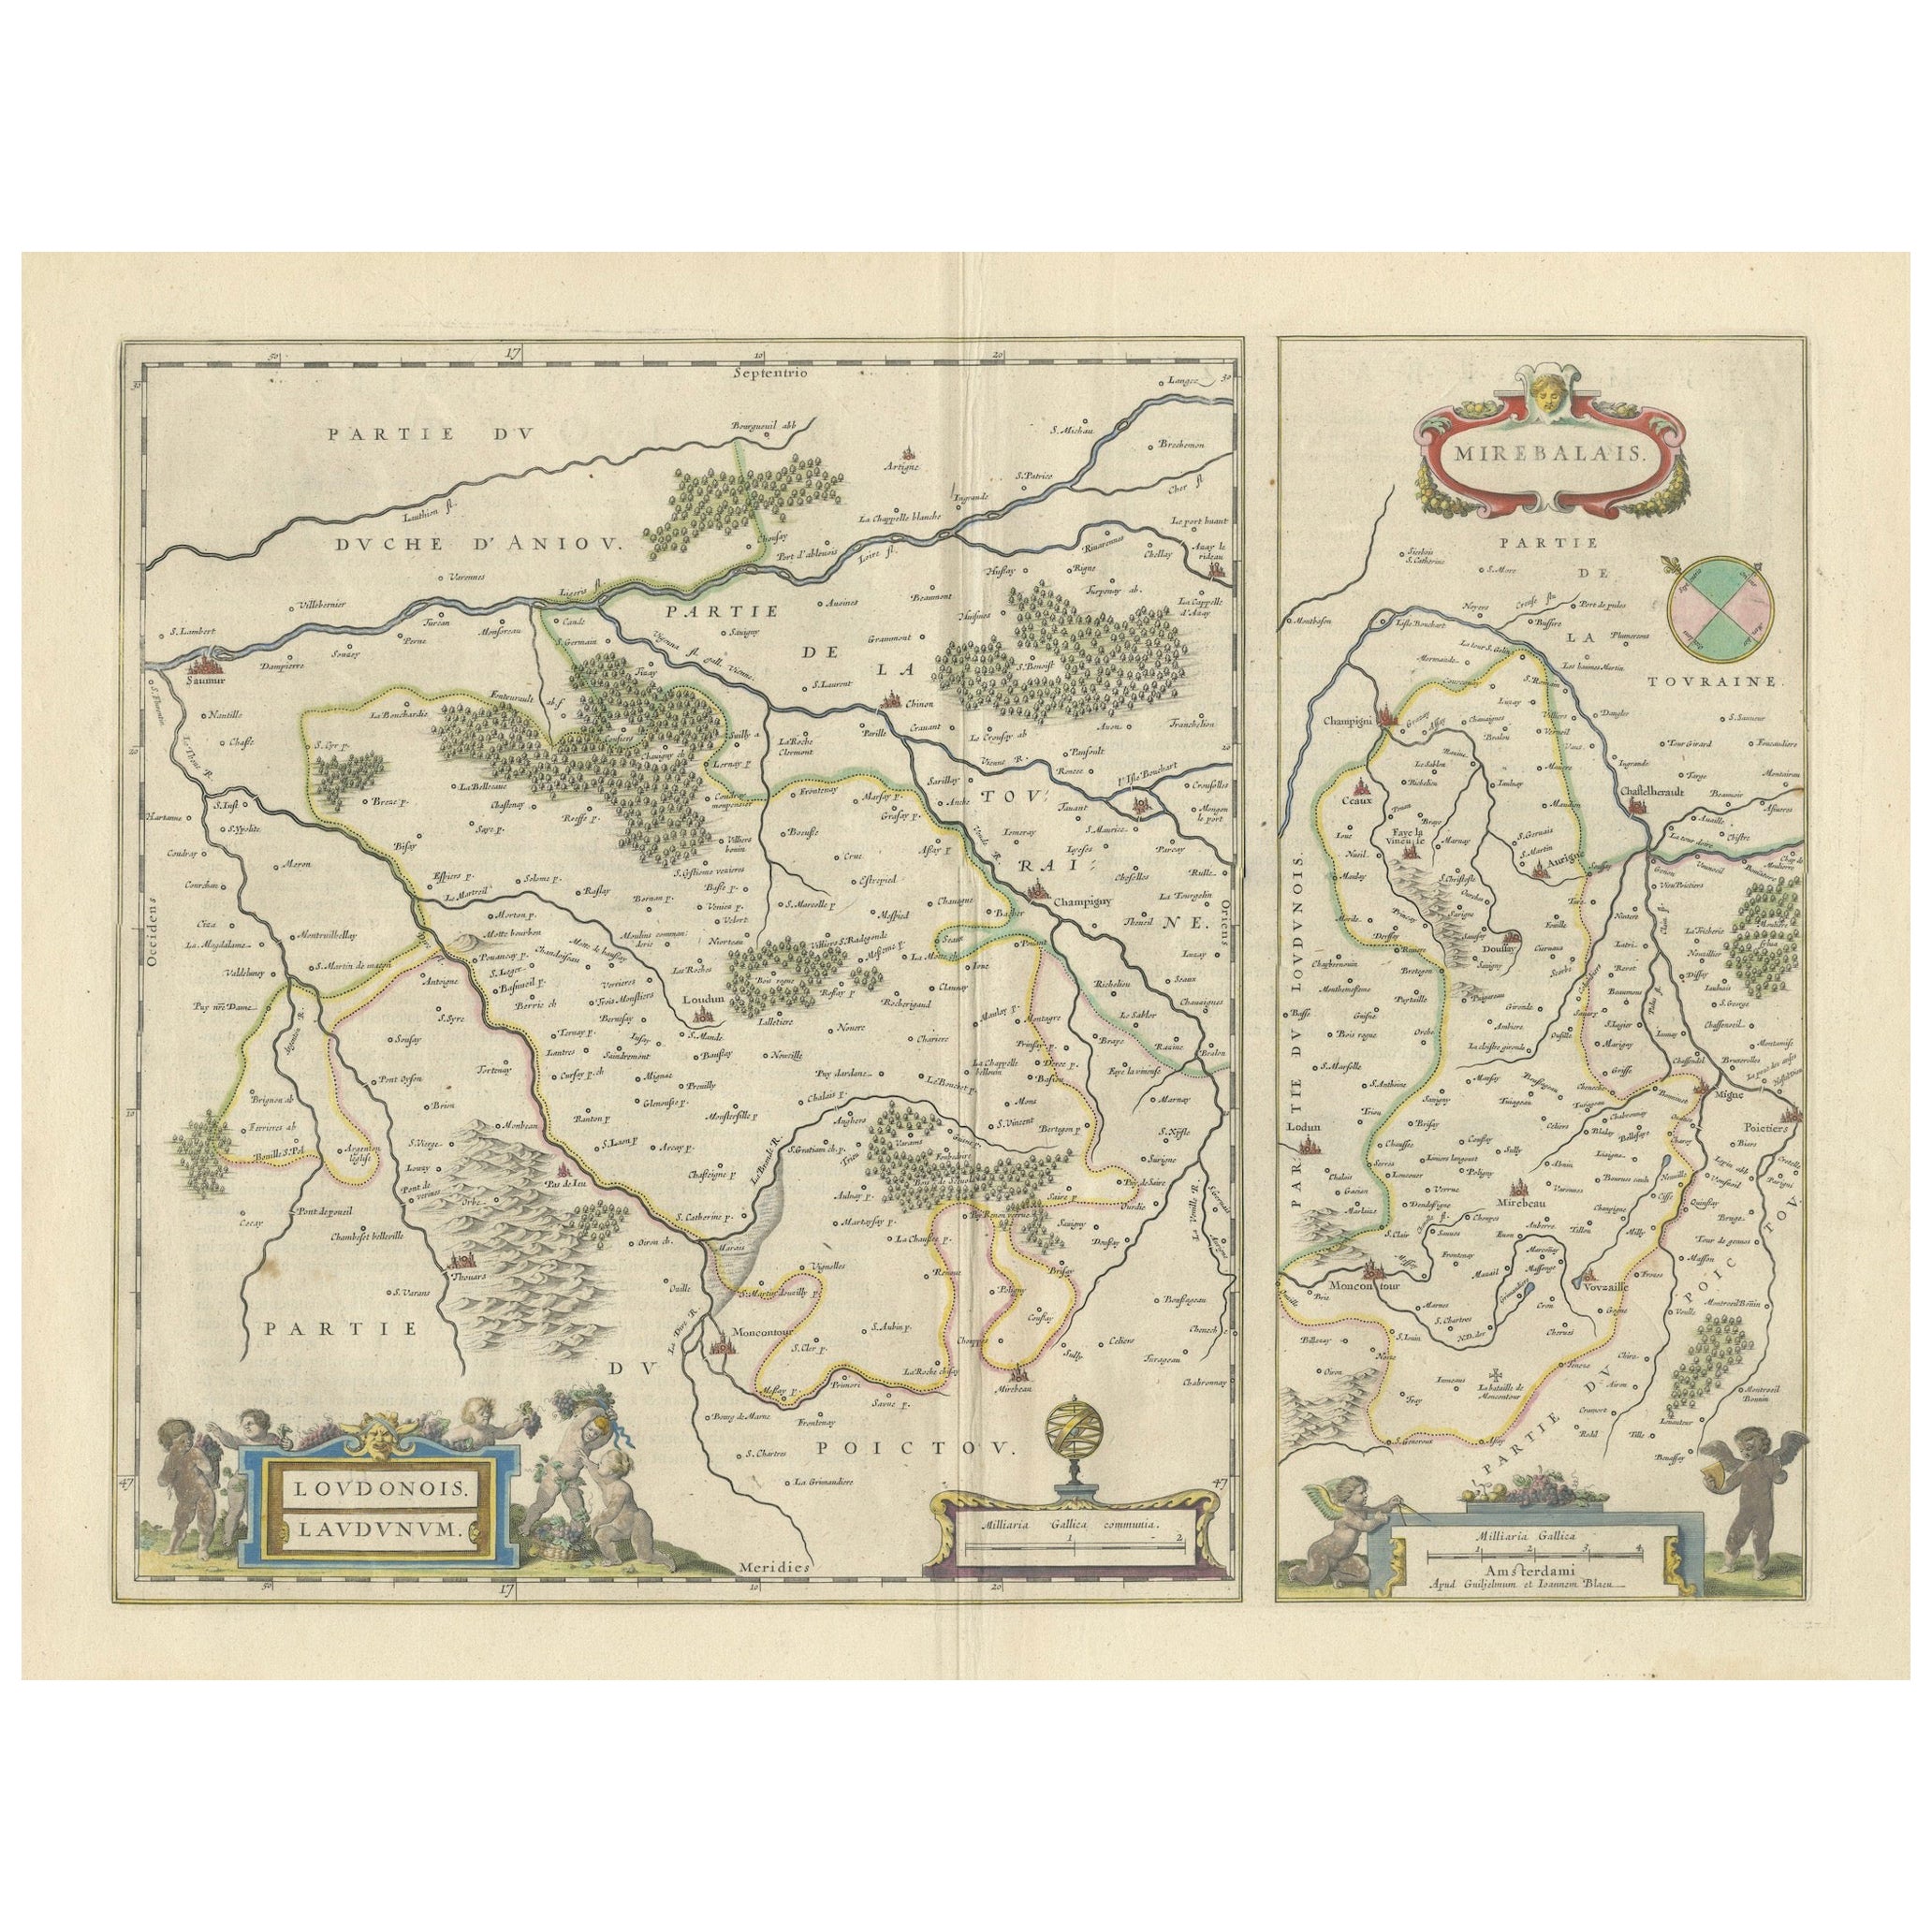 Loudun et Mirebeau : Un chef-d'œuvre cartographique de la France du XVIIe siècle par Blaeu en vente